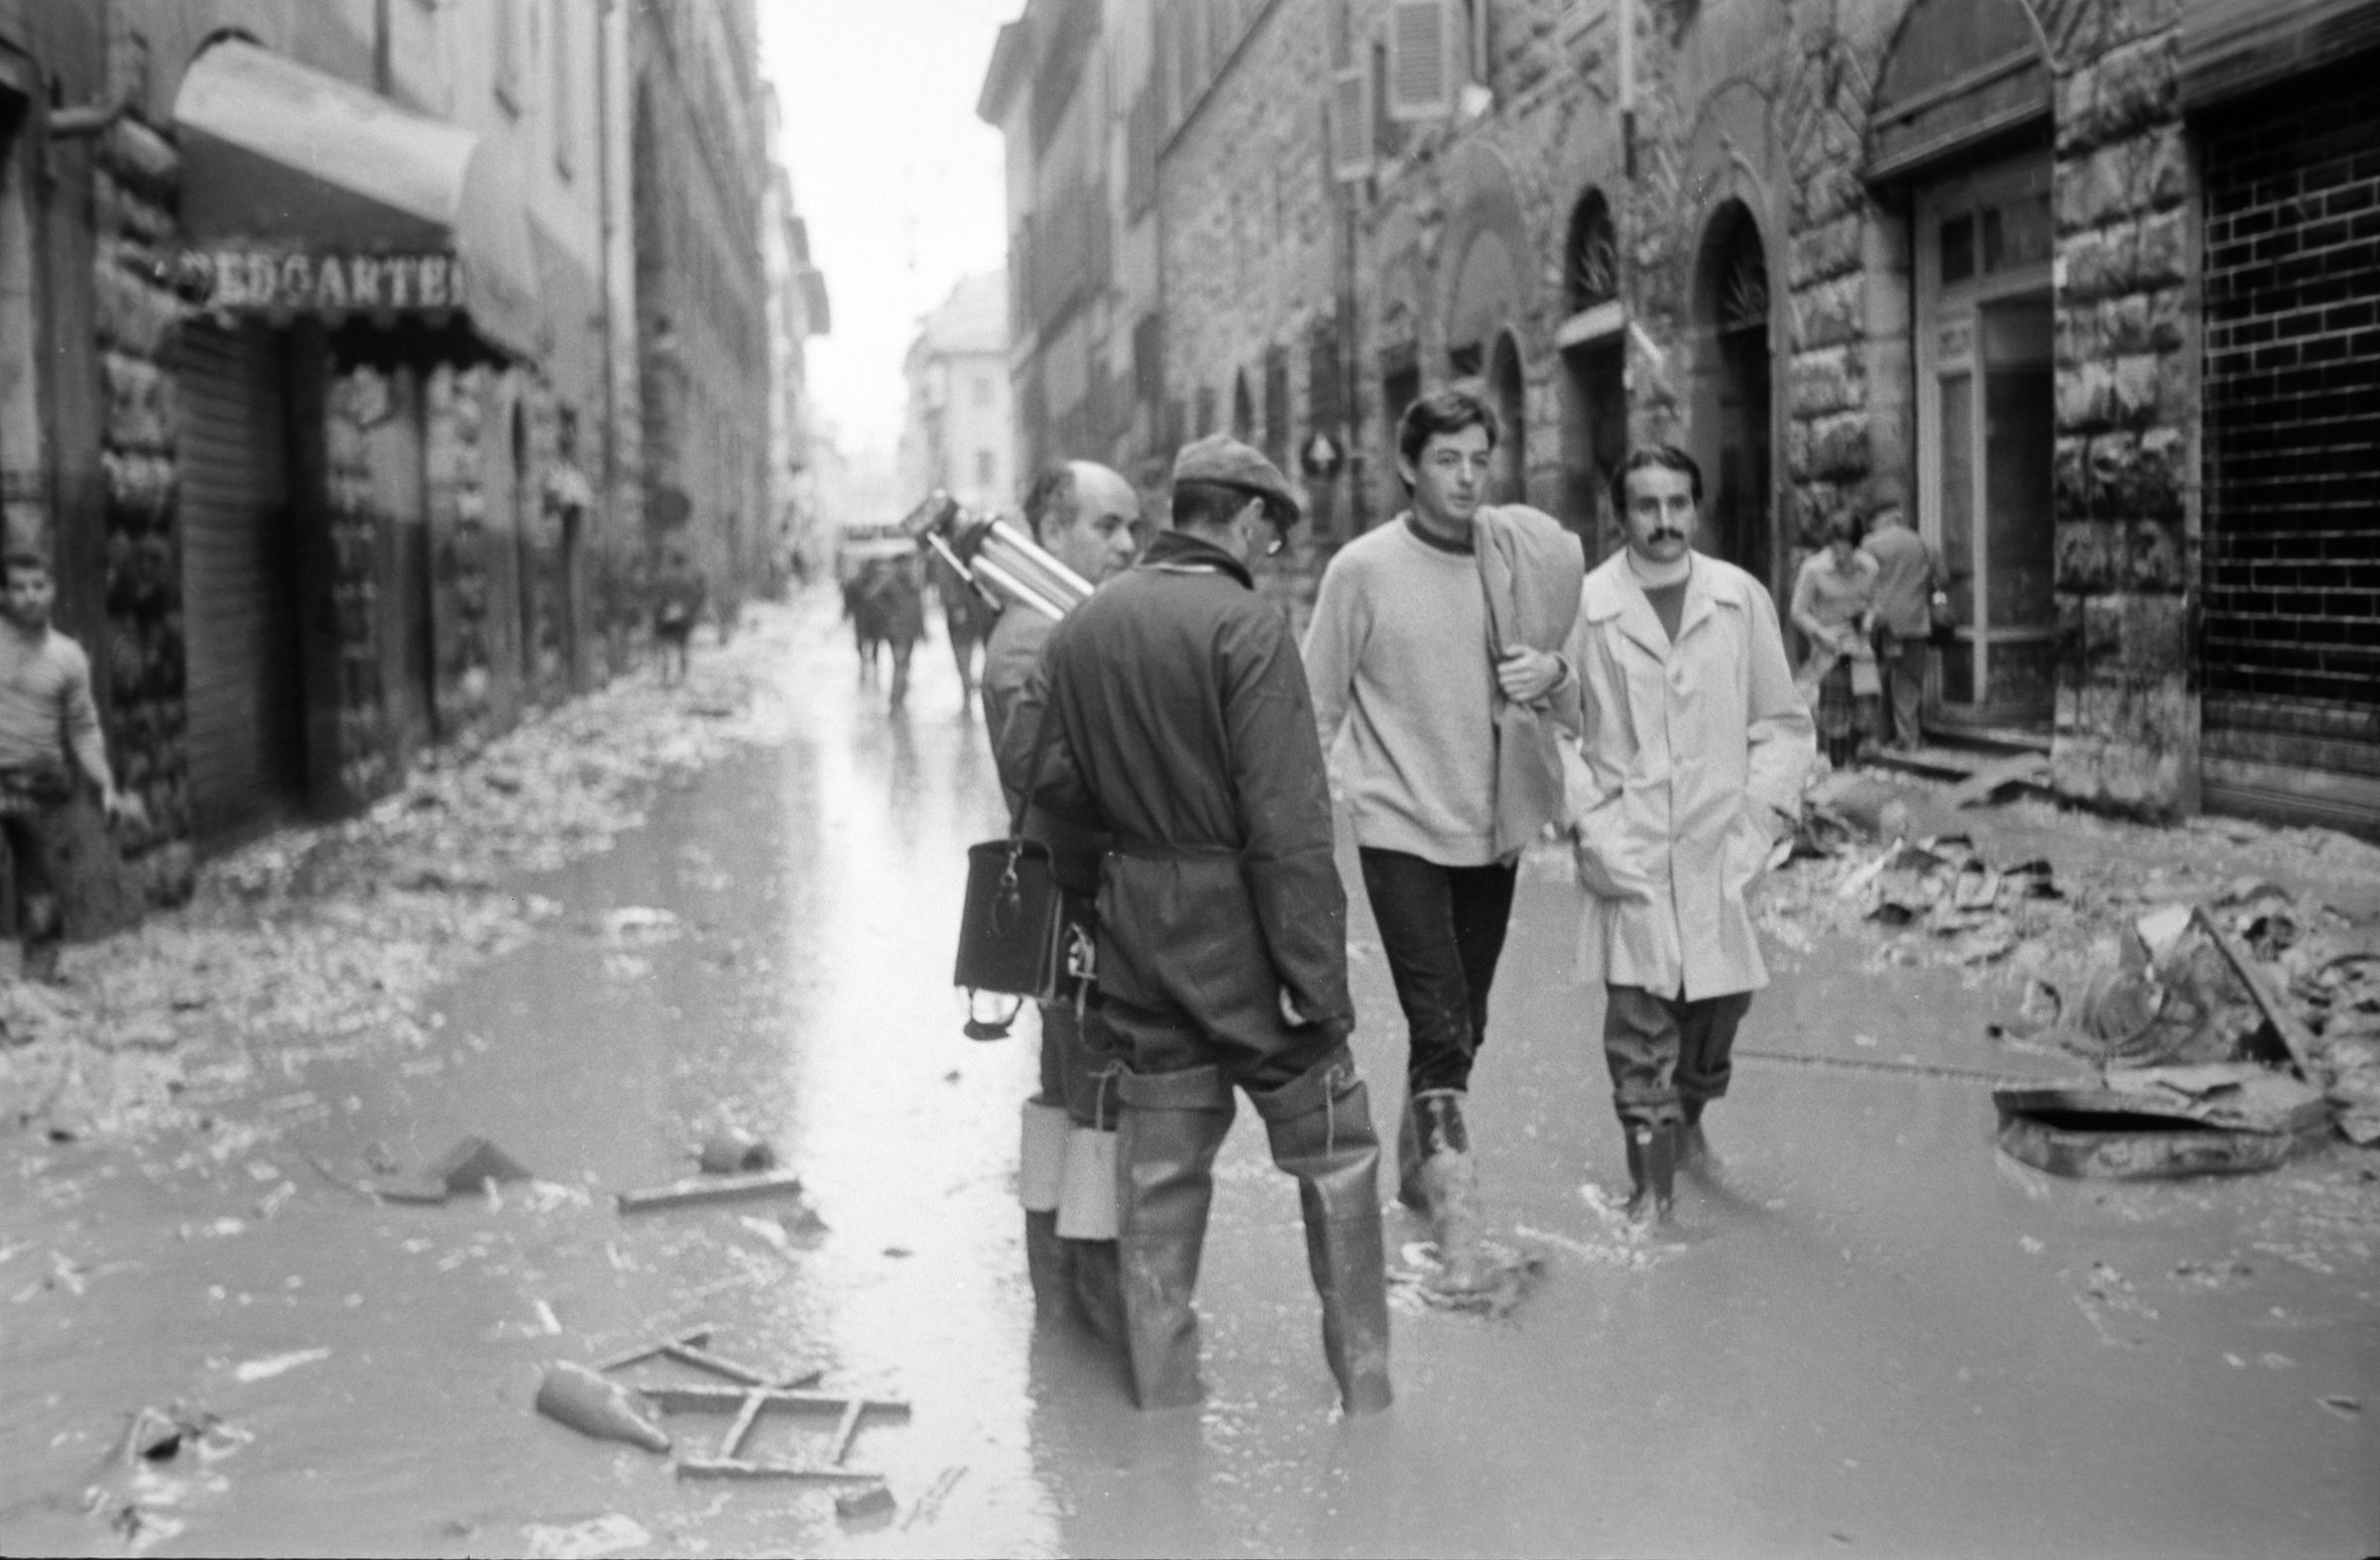 Fotografo non identificato, Firenze - Via de' Benci, 1966, gelatina ai sali d'argento/pellicola, 35mm, R001779